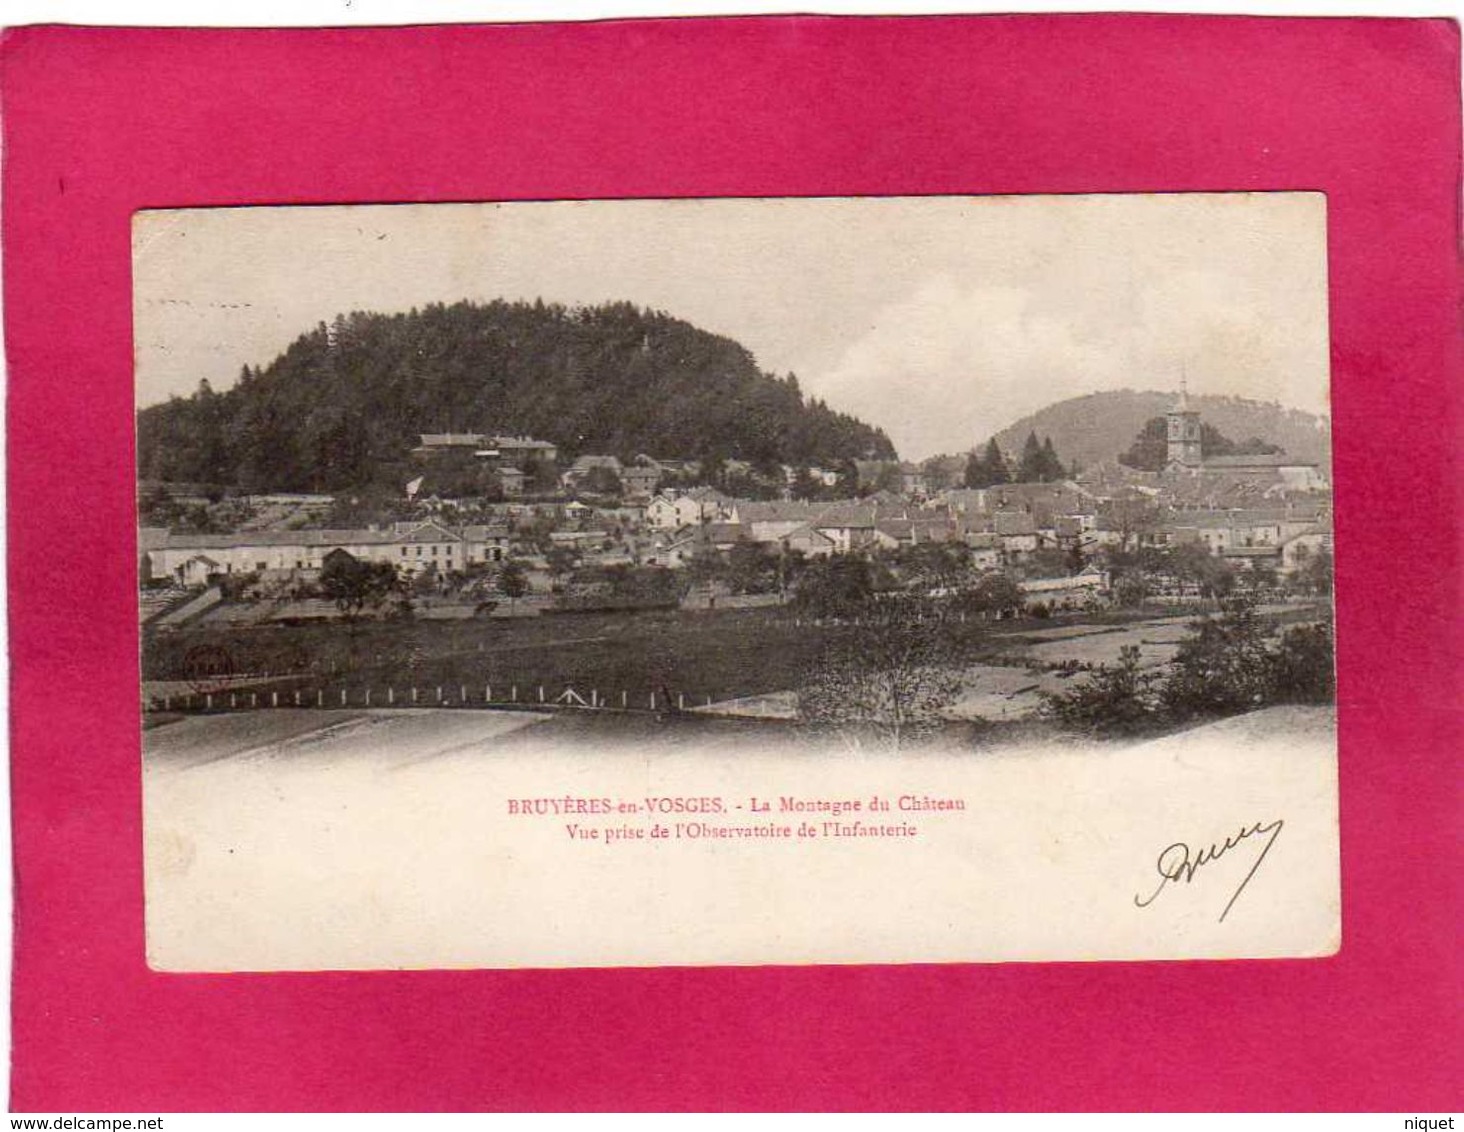 88 Vosges, Bruyères-en-Vosges, La Montagne Du Château, Vue Prise De L'Observatoire De L'Infanterie, 1903 - Bruyeres